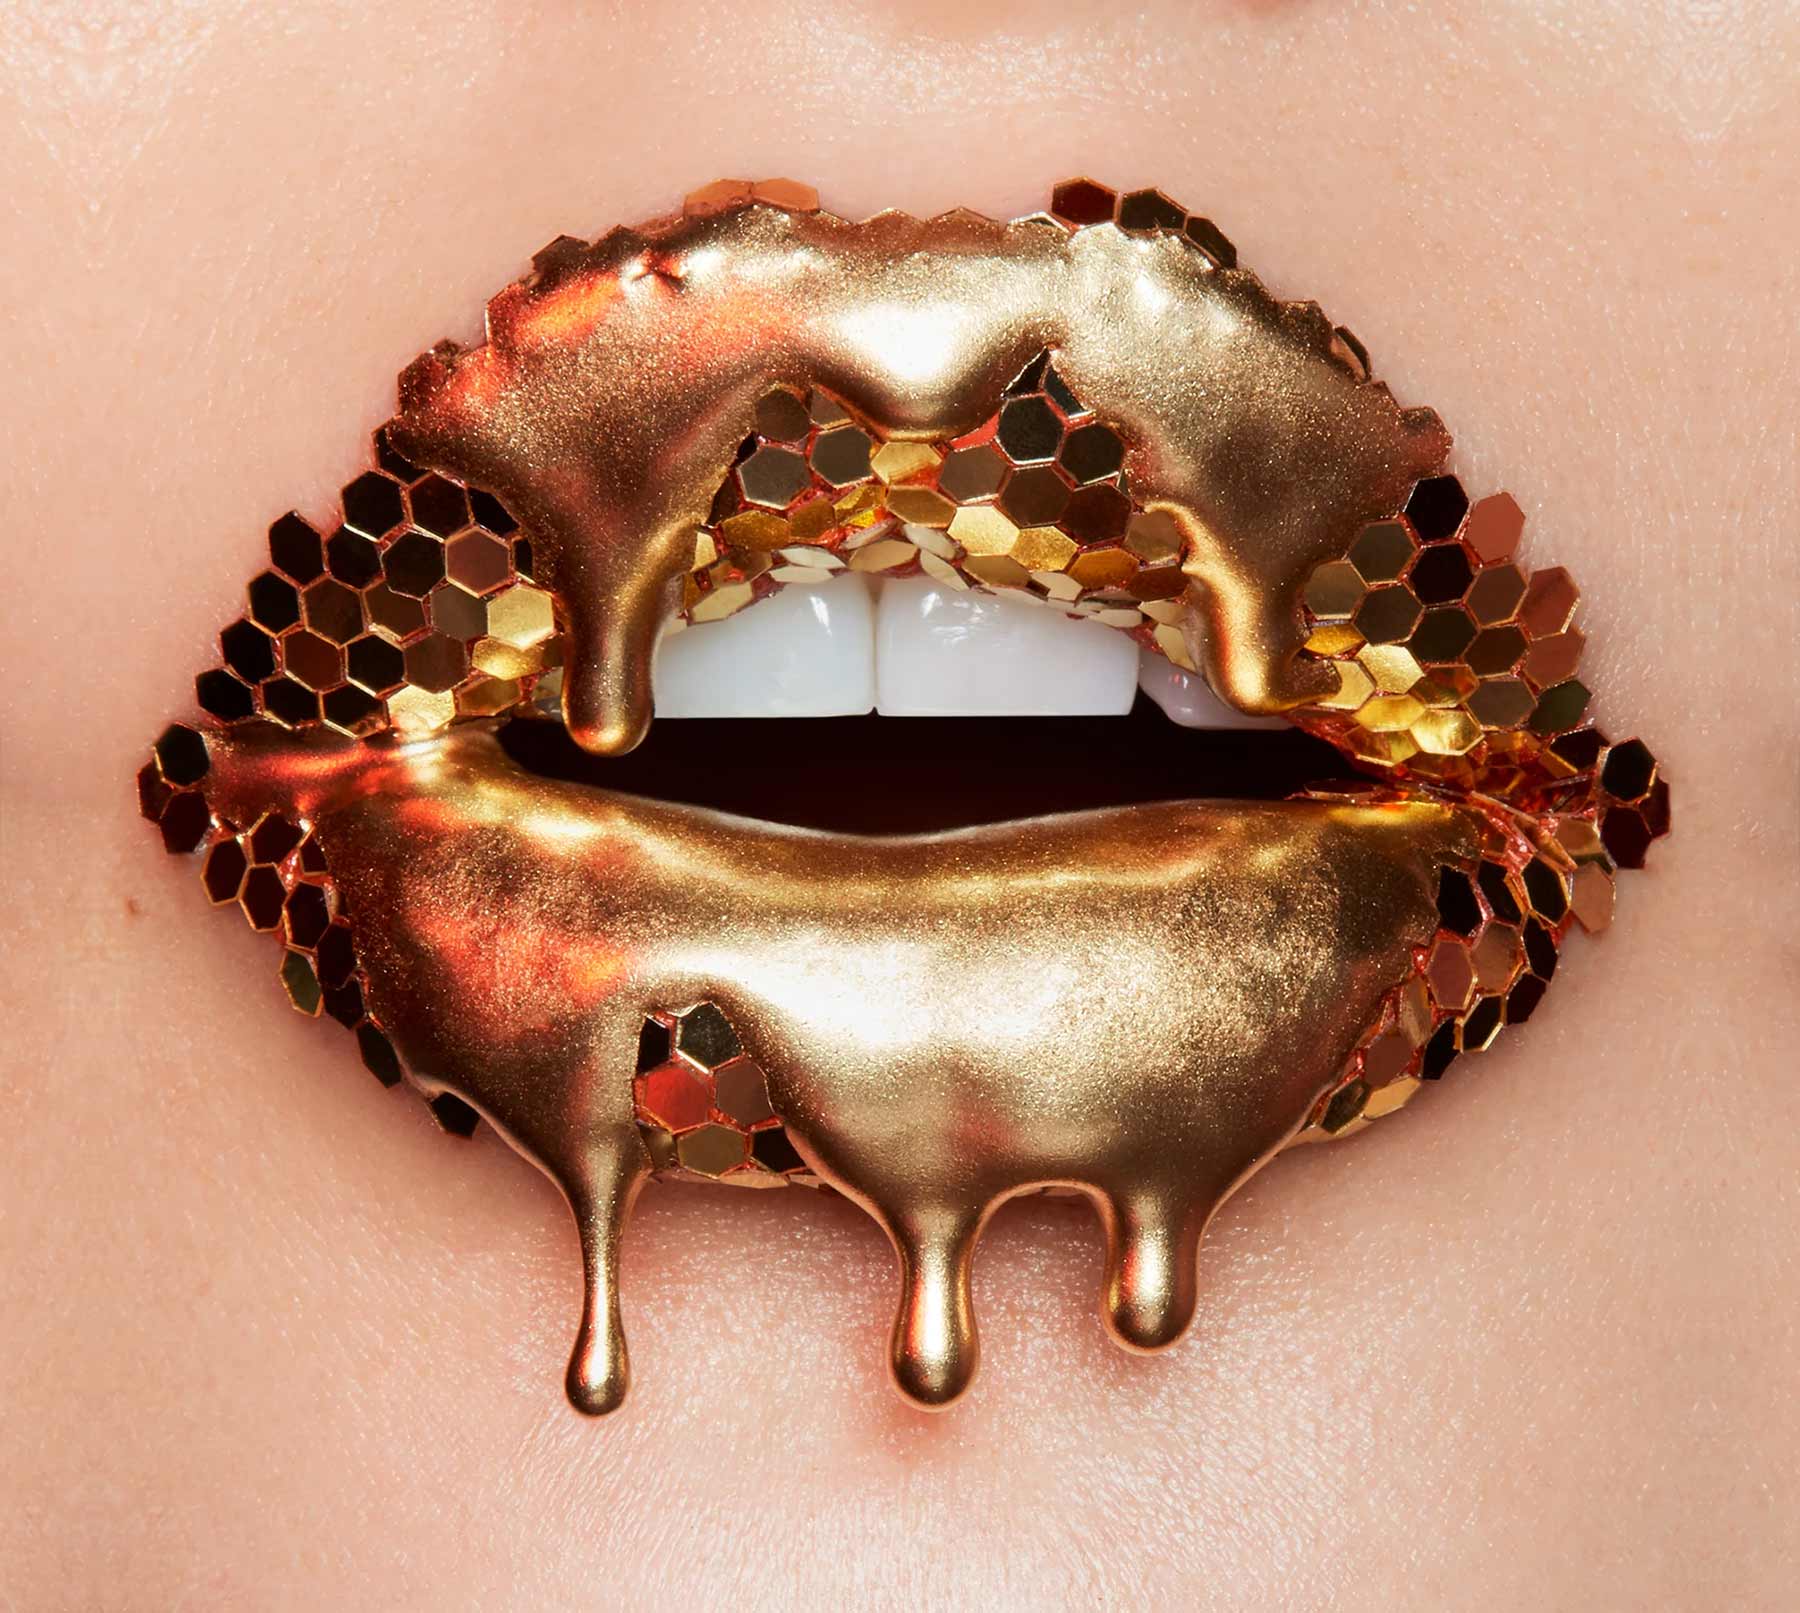 Neue Lippen-Kunstwerke von Vlada Haggerty